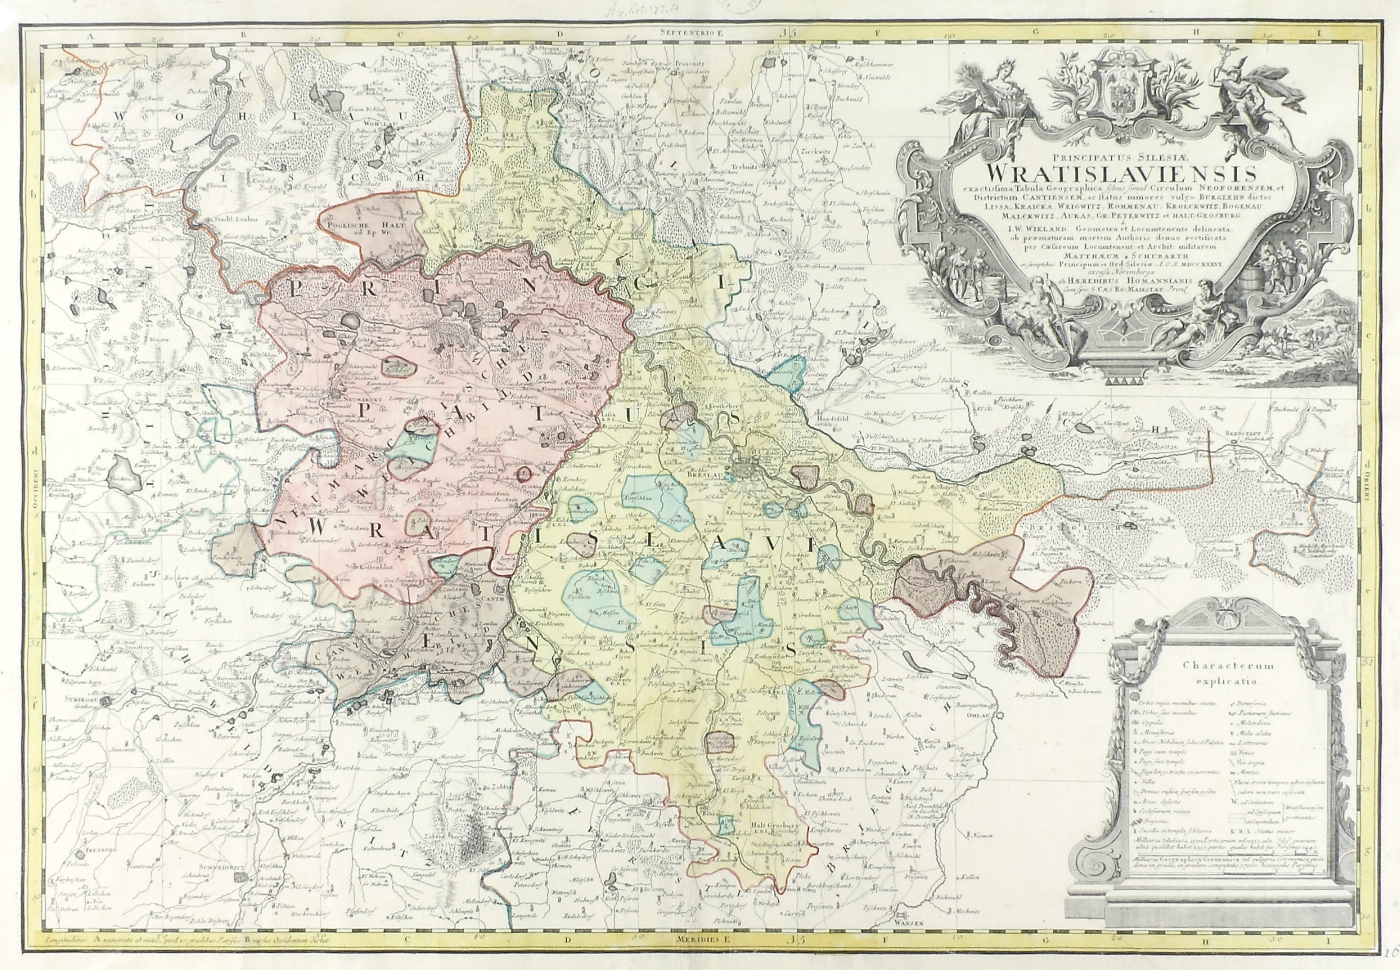 Auktionshaus Quentin Berlin  Dekorative Grafik Landkarte  Schlesien  Homann Erben  NÃ¼rnberg  um 1736